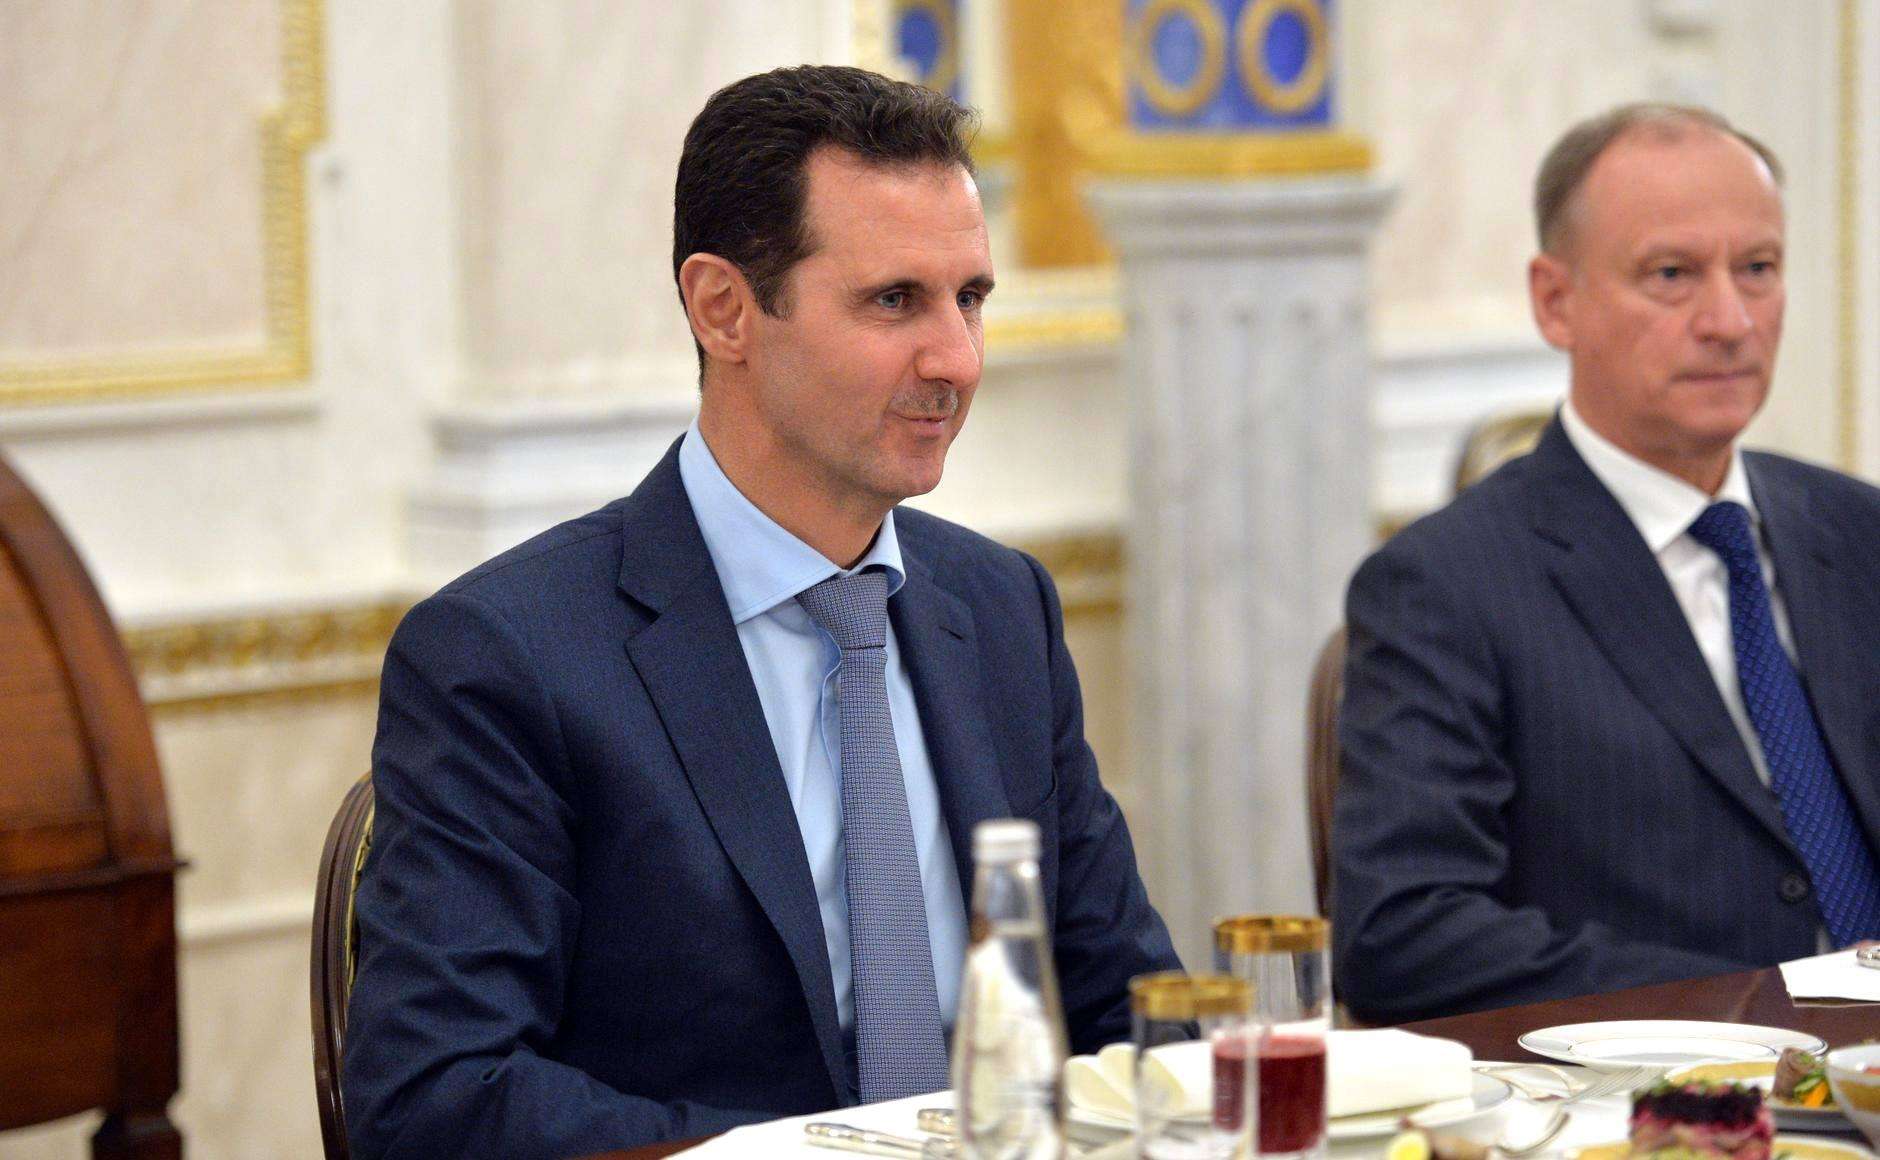 شام کے صدر بشار الاسد کی روسی صد ولادی میر پوتن سے اہم ملاقات